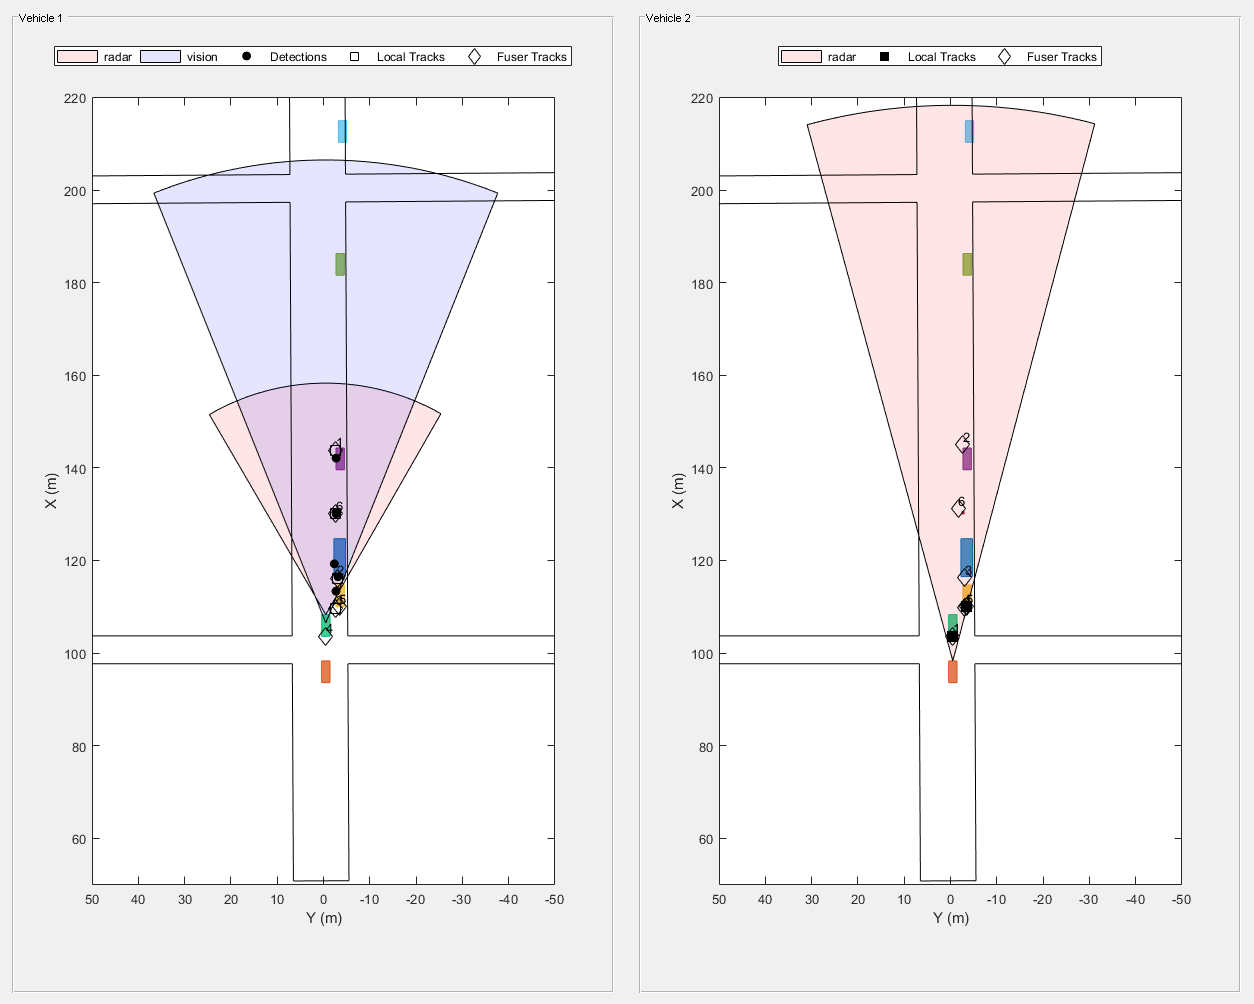 图Snap #2包含2个轴对象和其他uipanel类型的对象。坐标轴对象1与xlabel X (m)， ylabel Y (m)包含11个类型为patch, line, text的对象。其中一条或多条线仅使用标记显示其值。这些对象表示雷达、视觉、探测、本地轨迹、Fuser轨迹。坐标轴对象2与xlabel X (m)， ylabel Y (m)包含9个类型为patch, line, text的对象。其中一条或多条线仅使用标记显示其值。这些对象表示雷达、本地轨迹、Fuser轨迹。